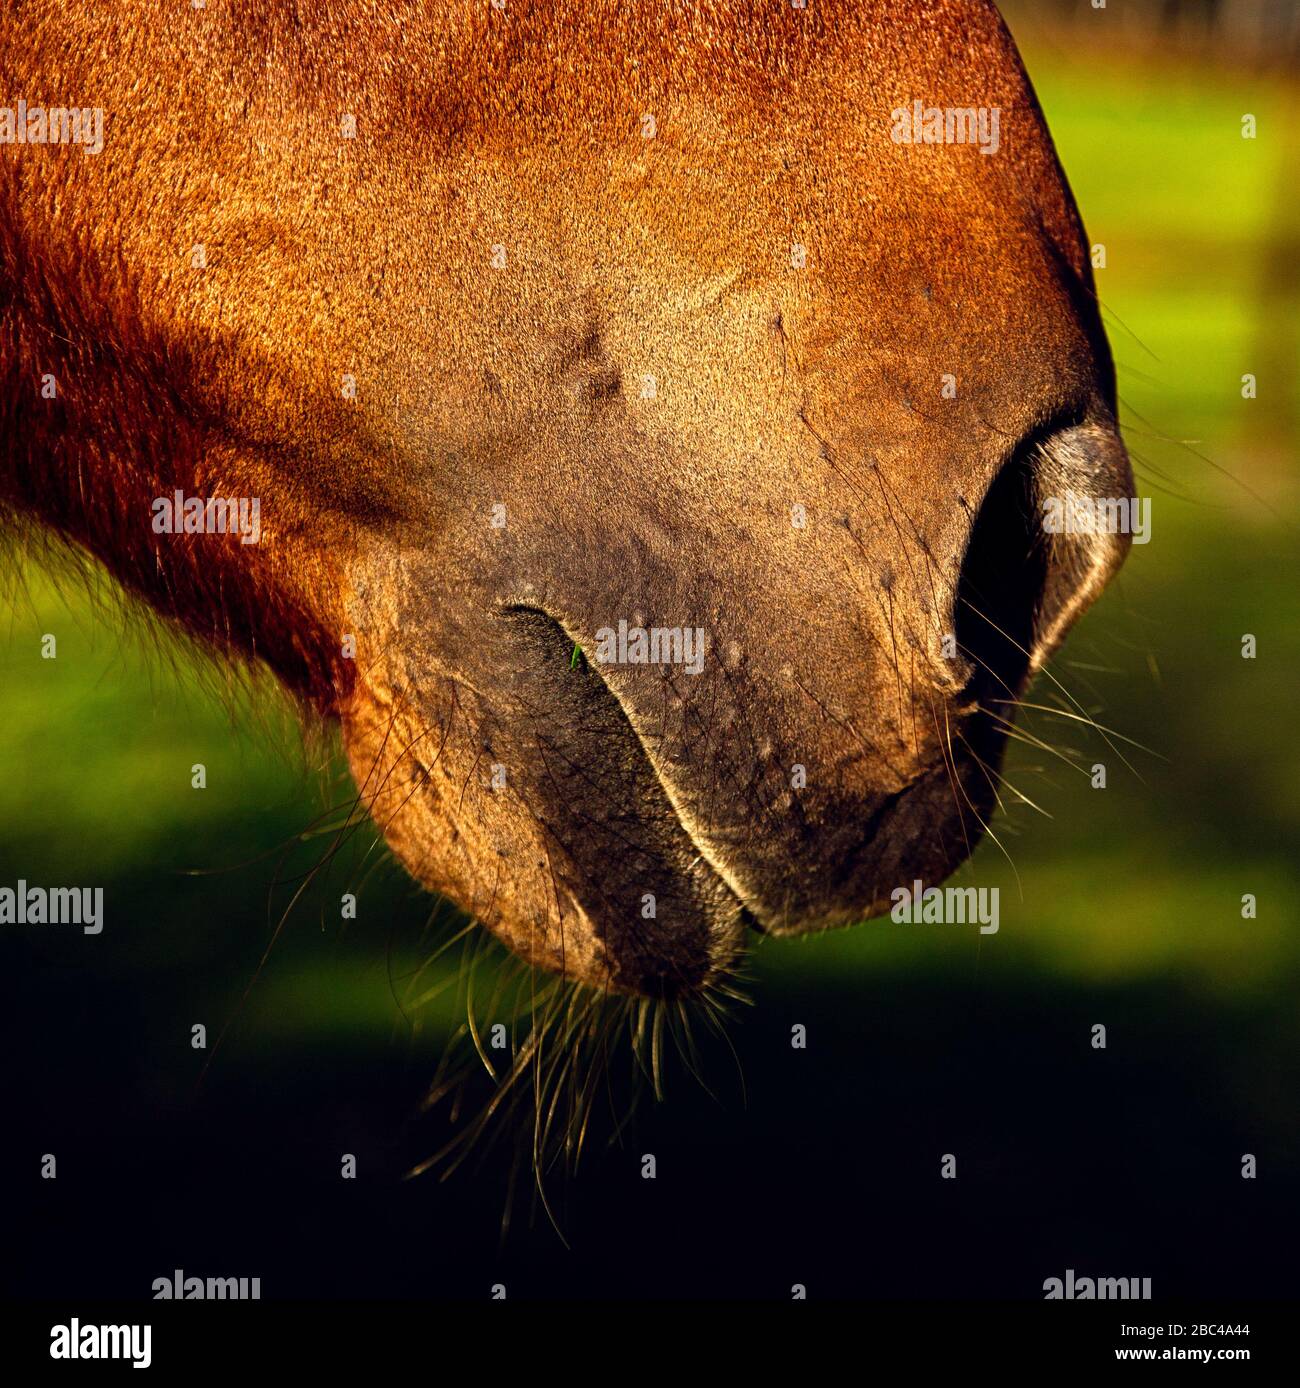 Nahaufnahme der Schnauze eines Pferdes, die Nasenloch, Mund, Kinn und Whisker zeigt Stockfoto